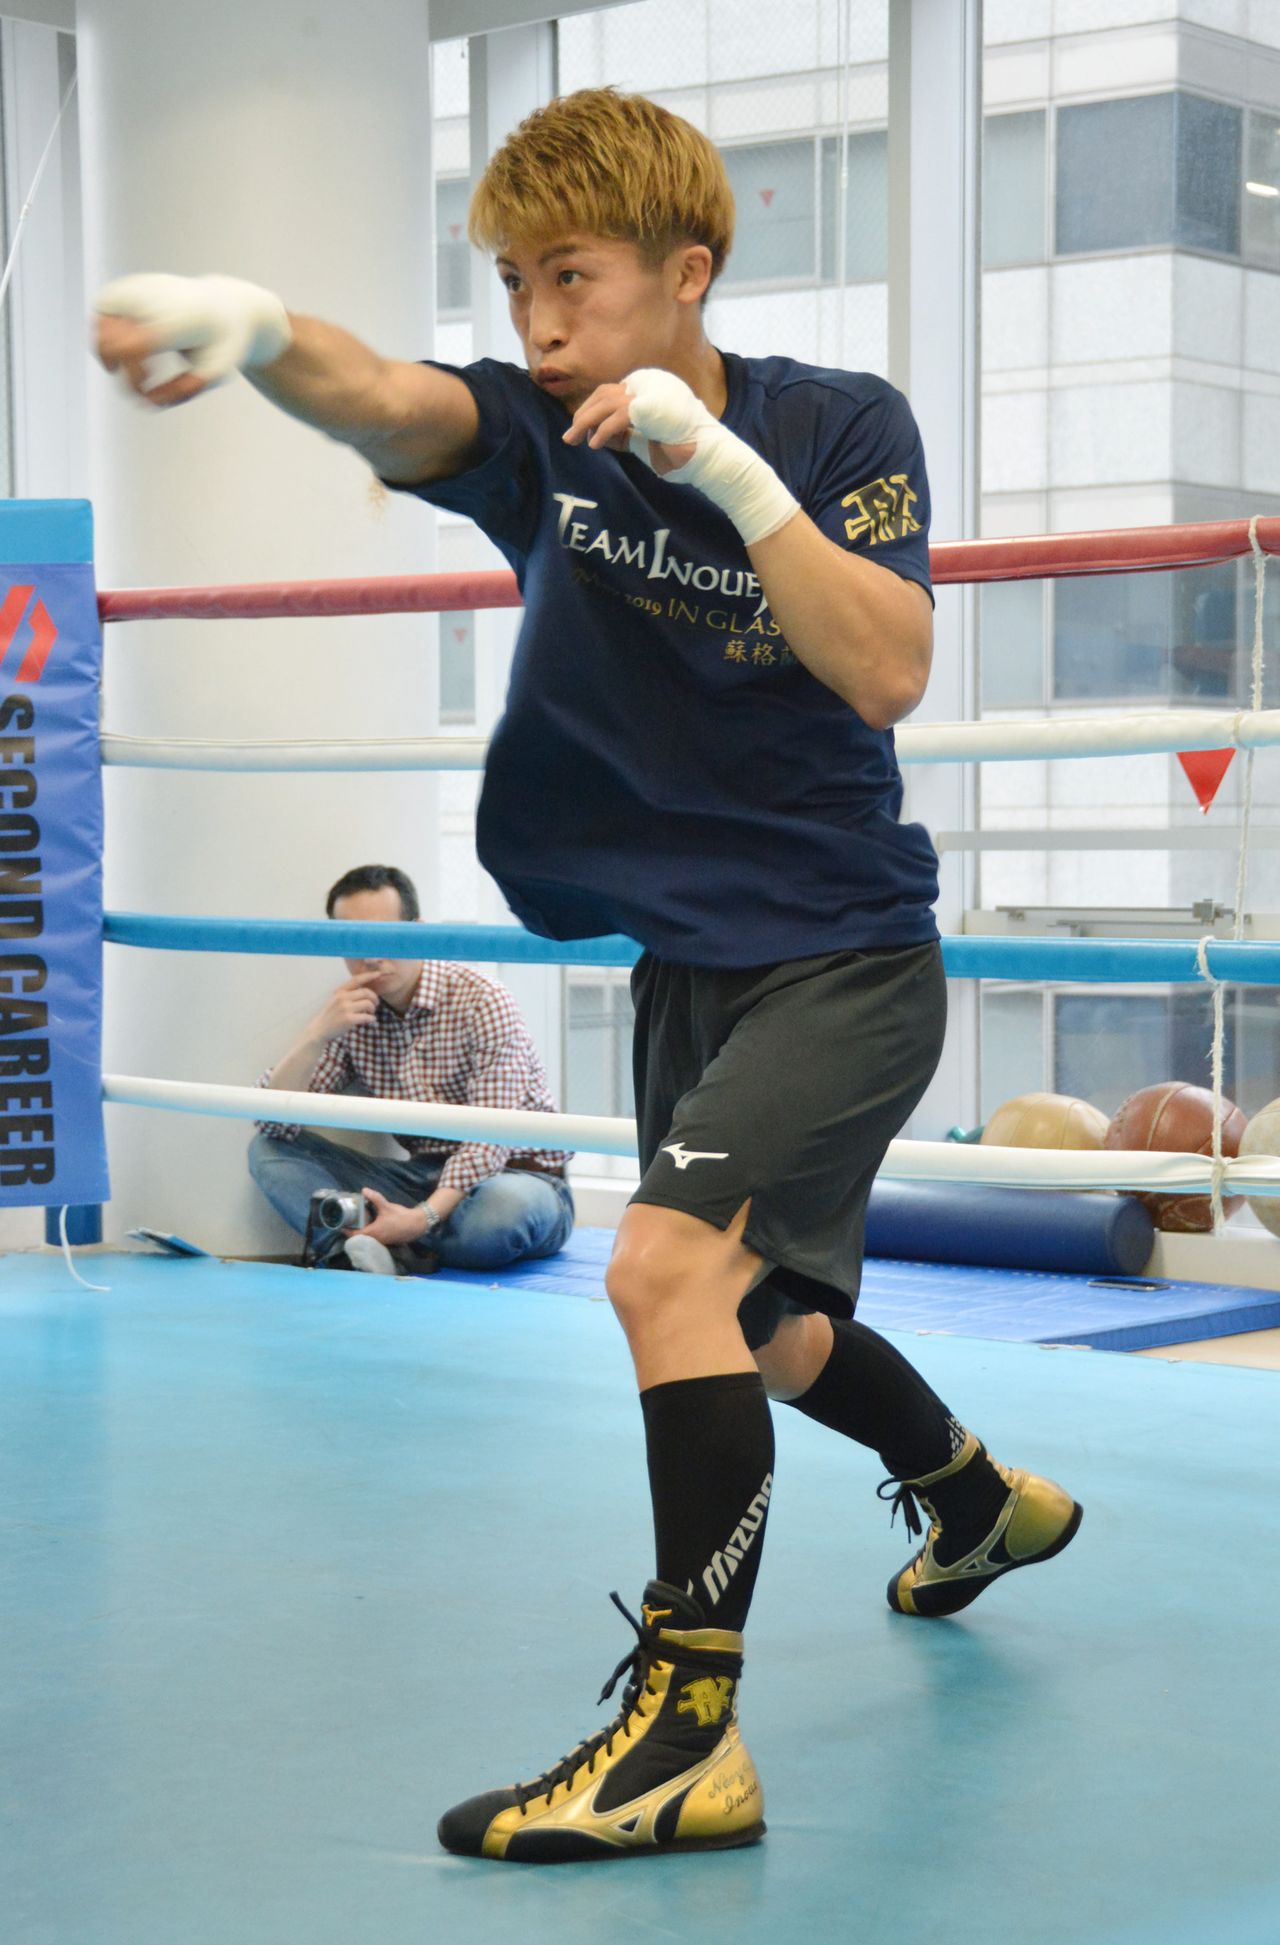 Inoue shadowboxes in May 2019 at the Ōhashi gym in Yokohama. (© Jiji)